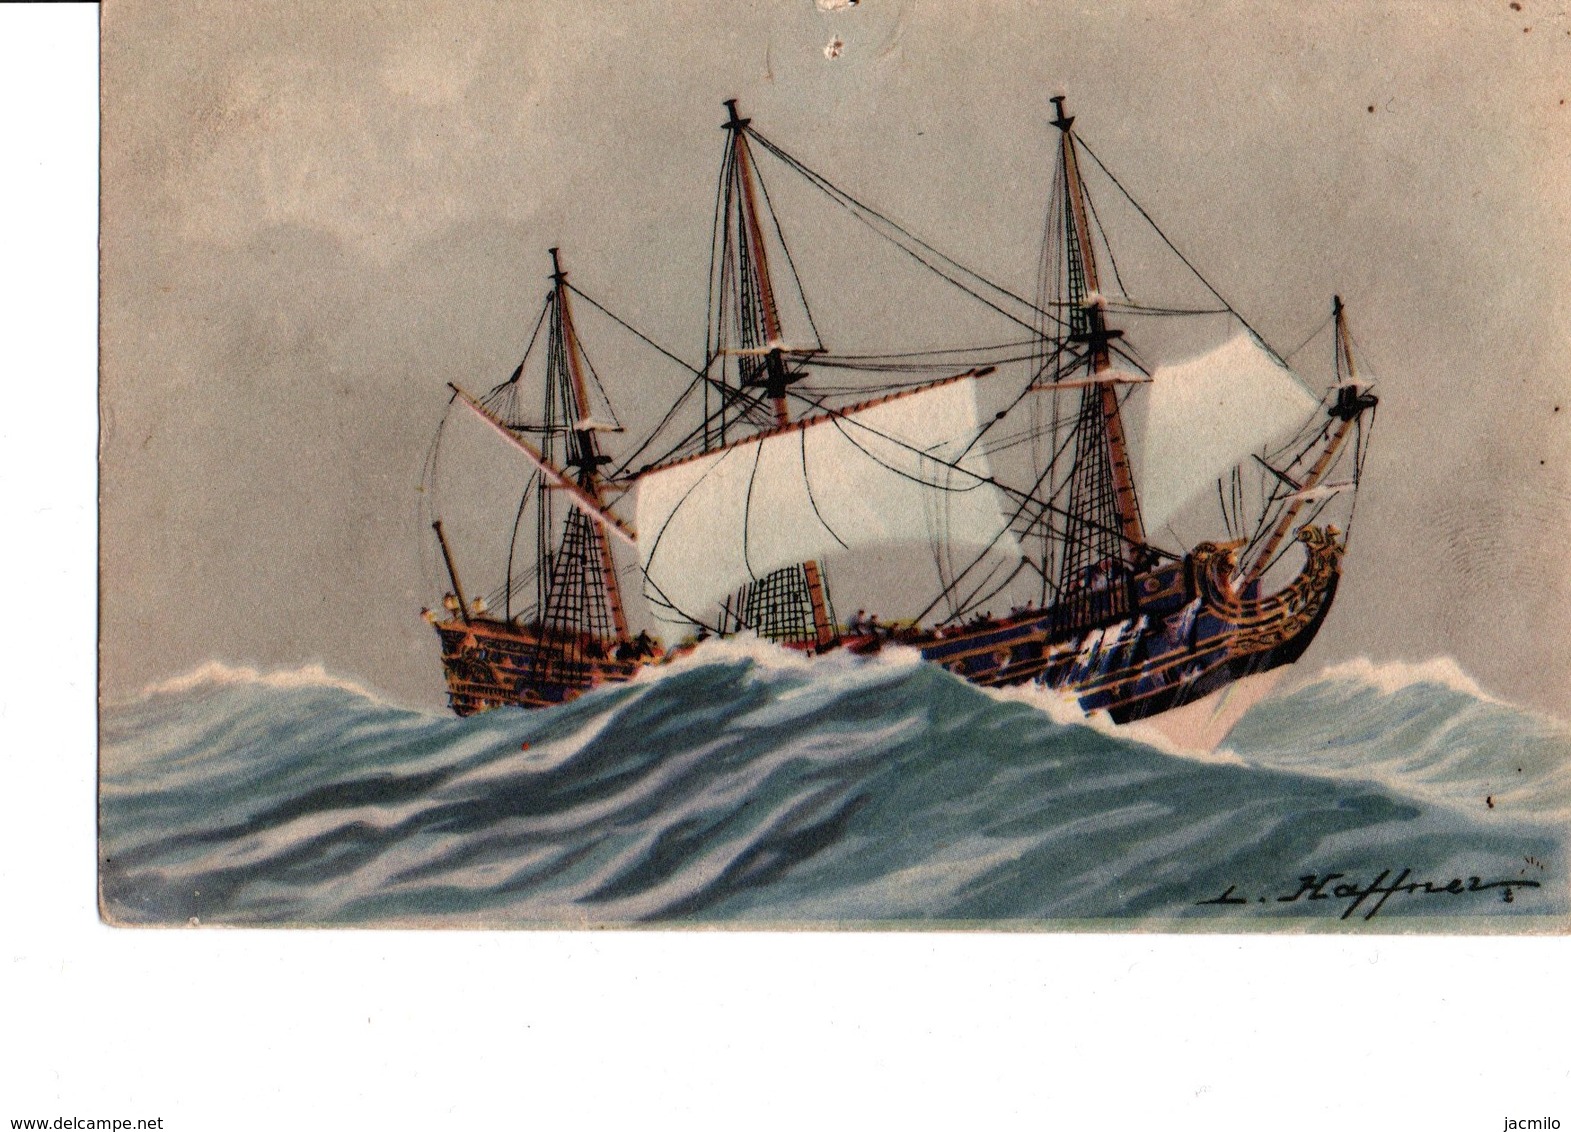 9 cartes de la collection de la ligue maritime et coloniale.